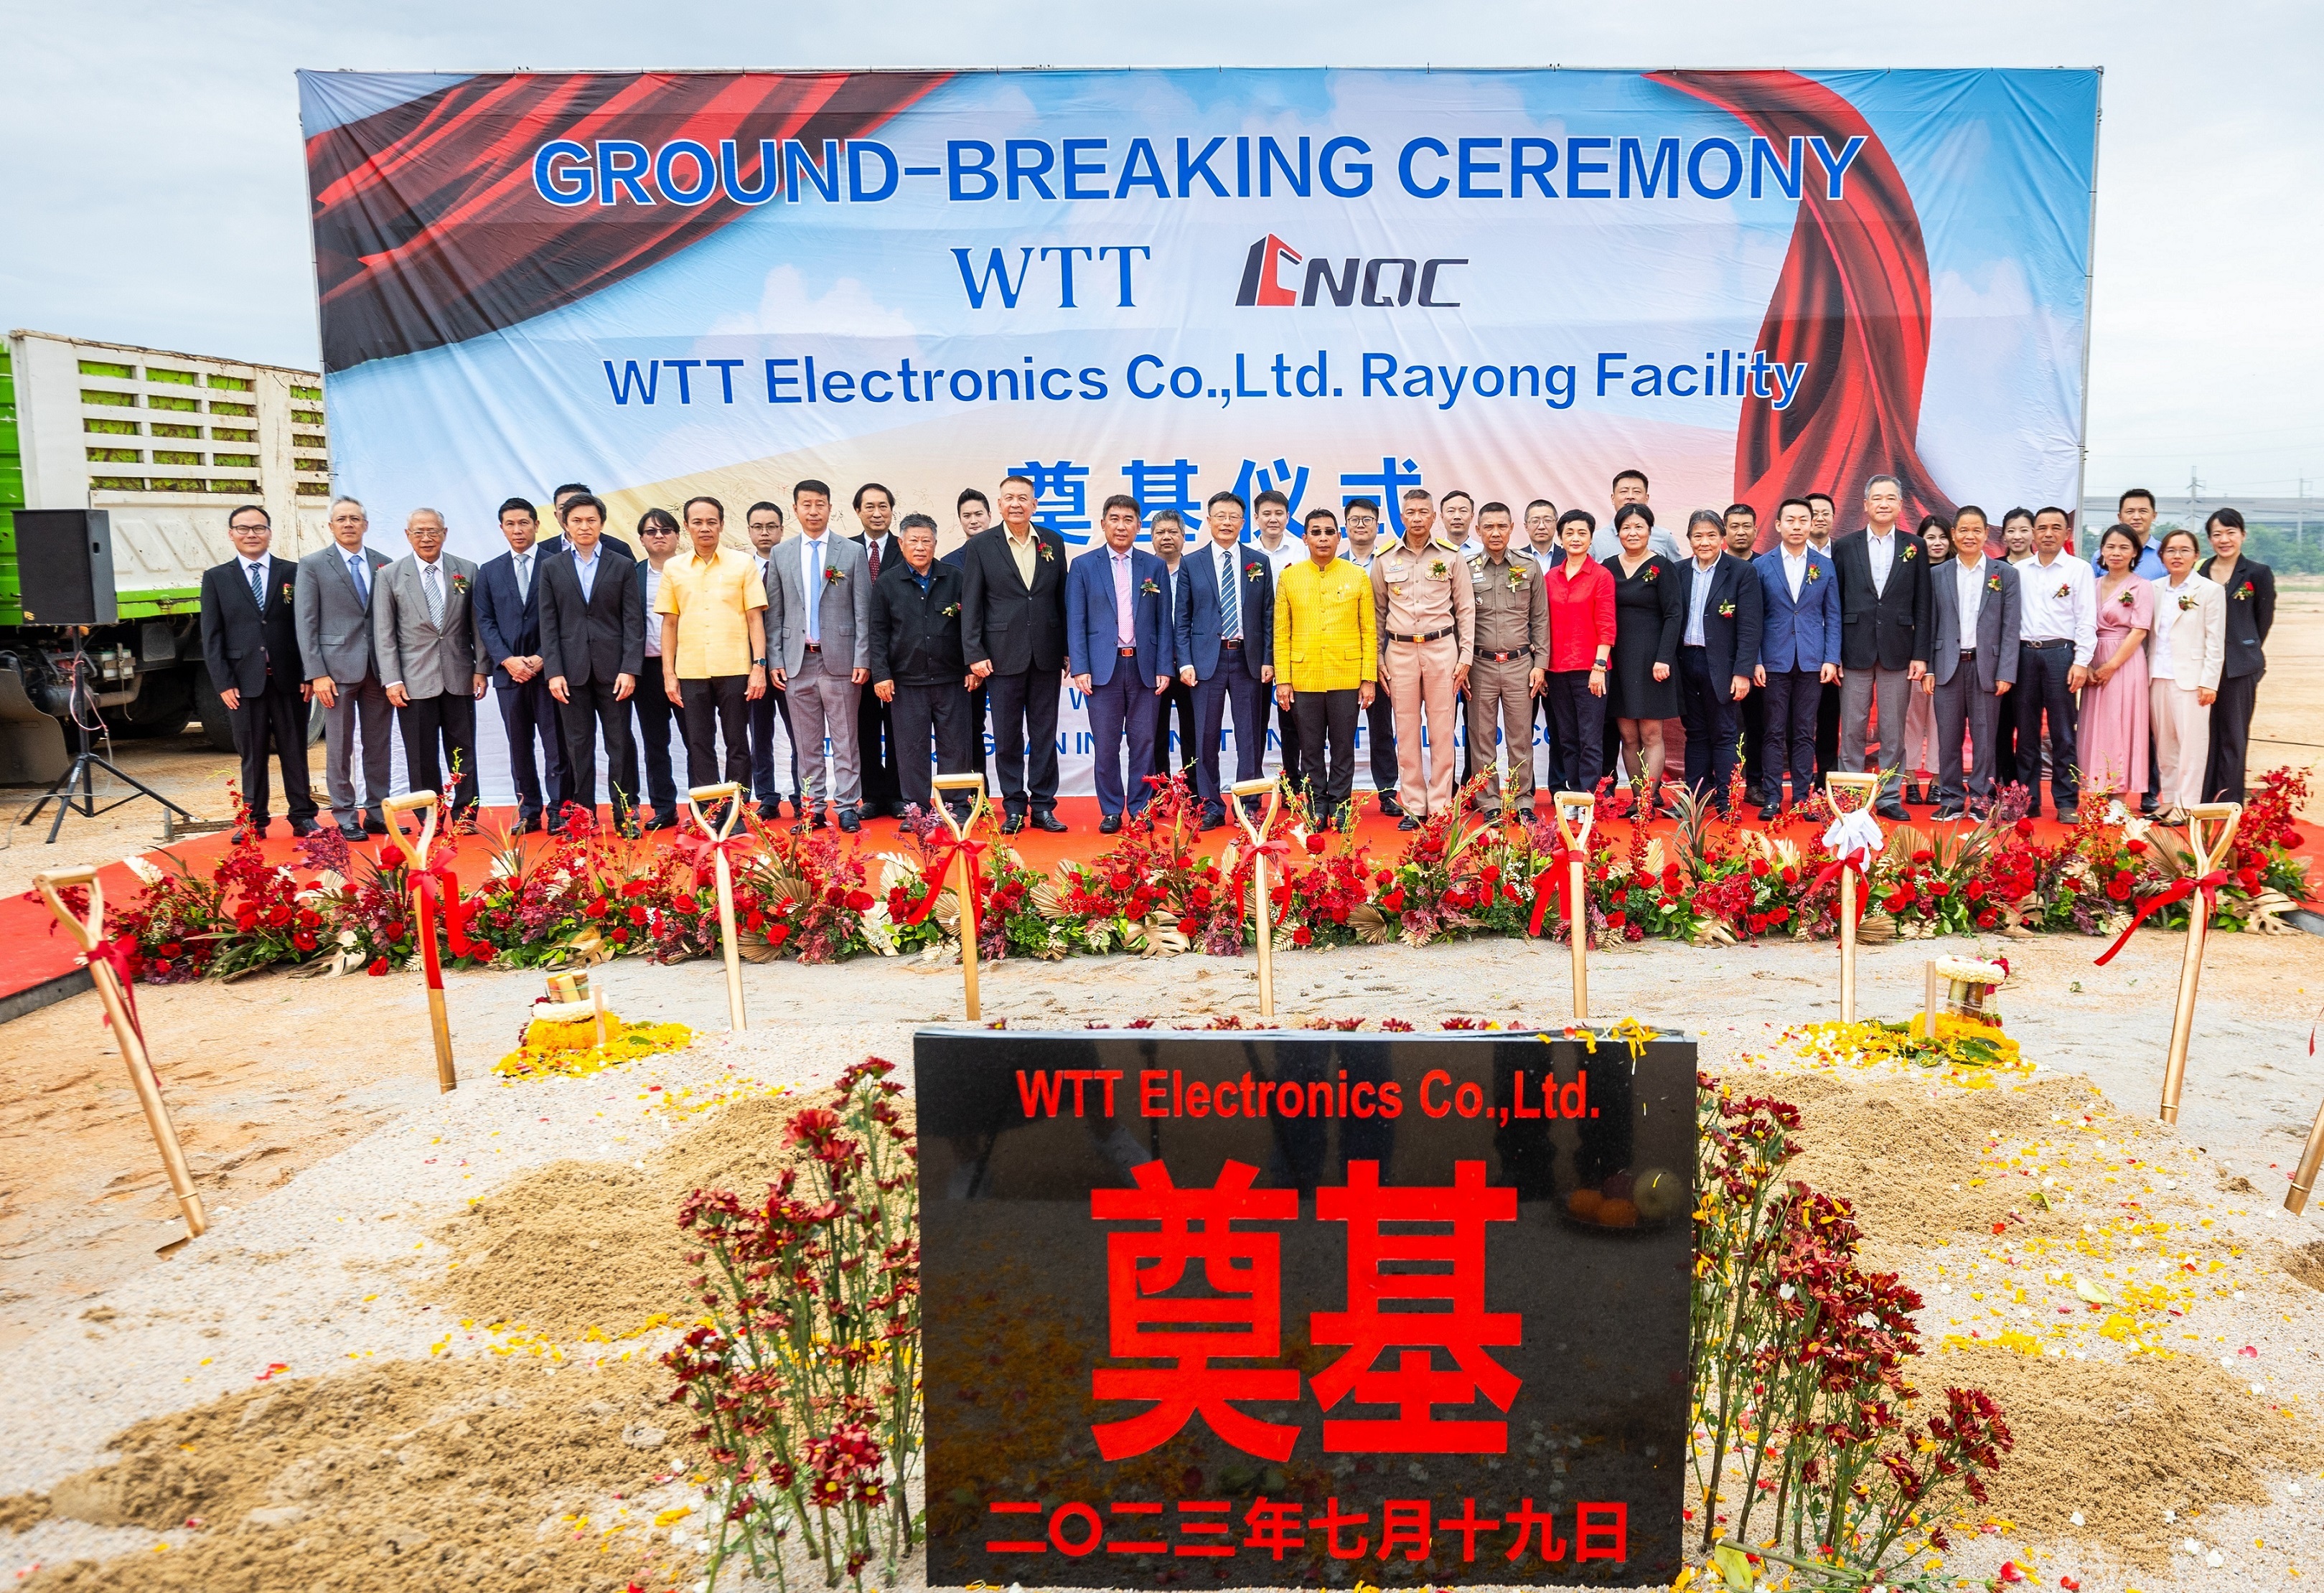 Groundbreaking Ceremony of WTT in Thailand